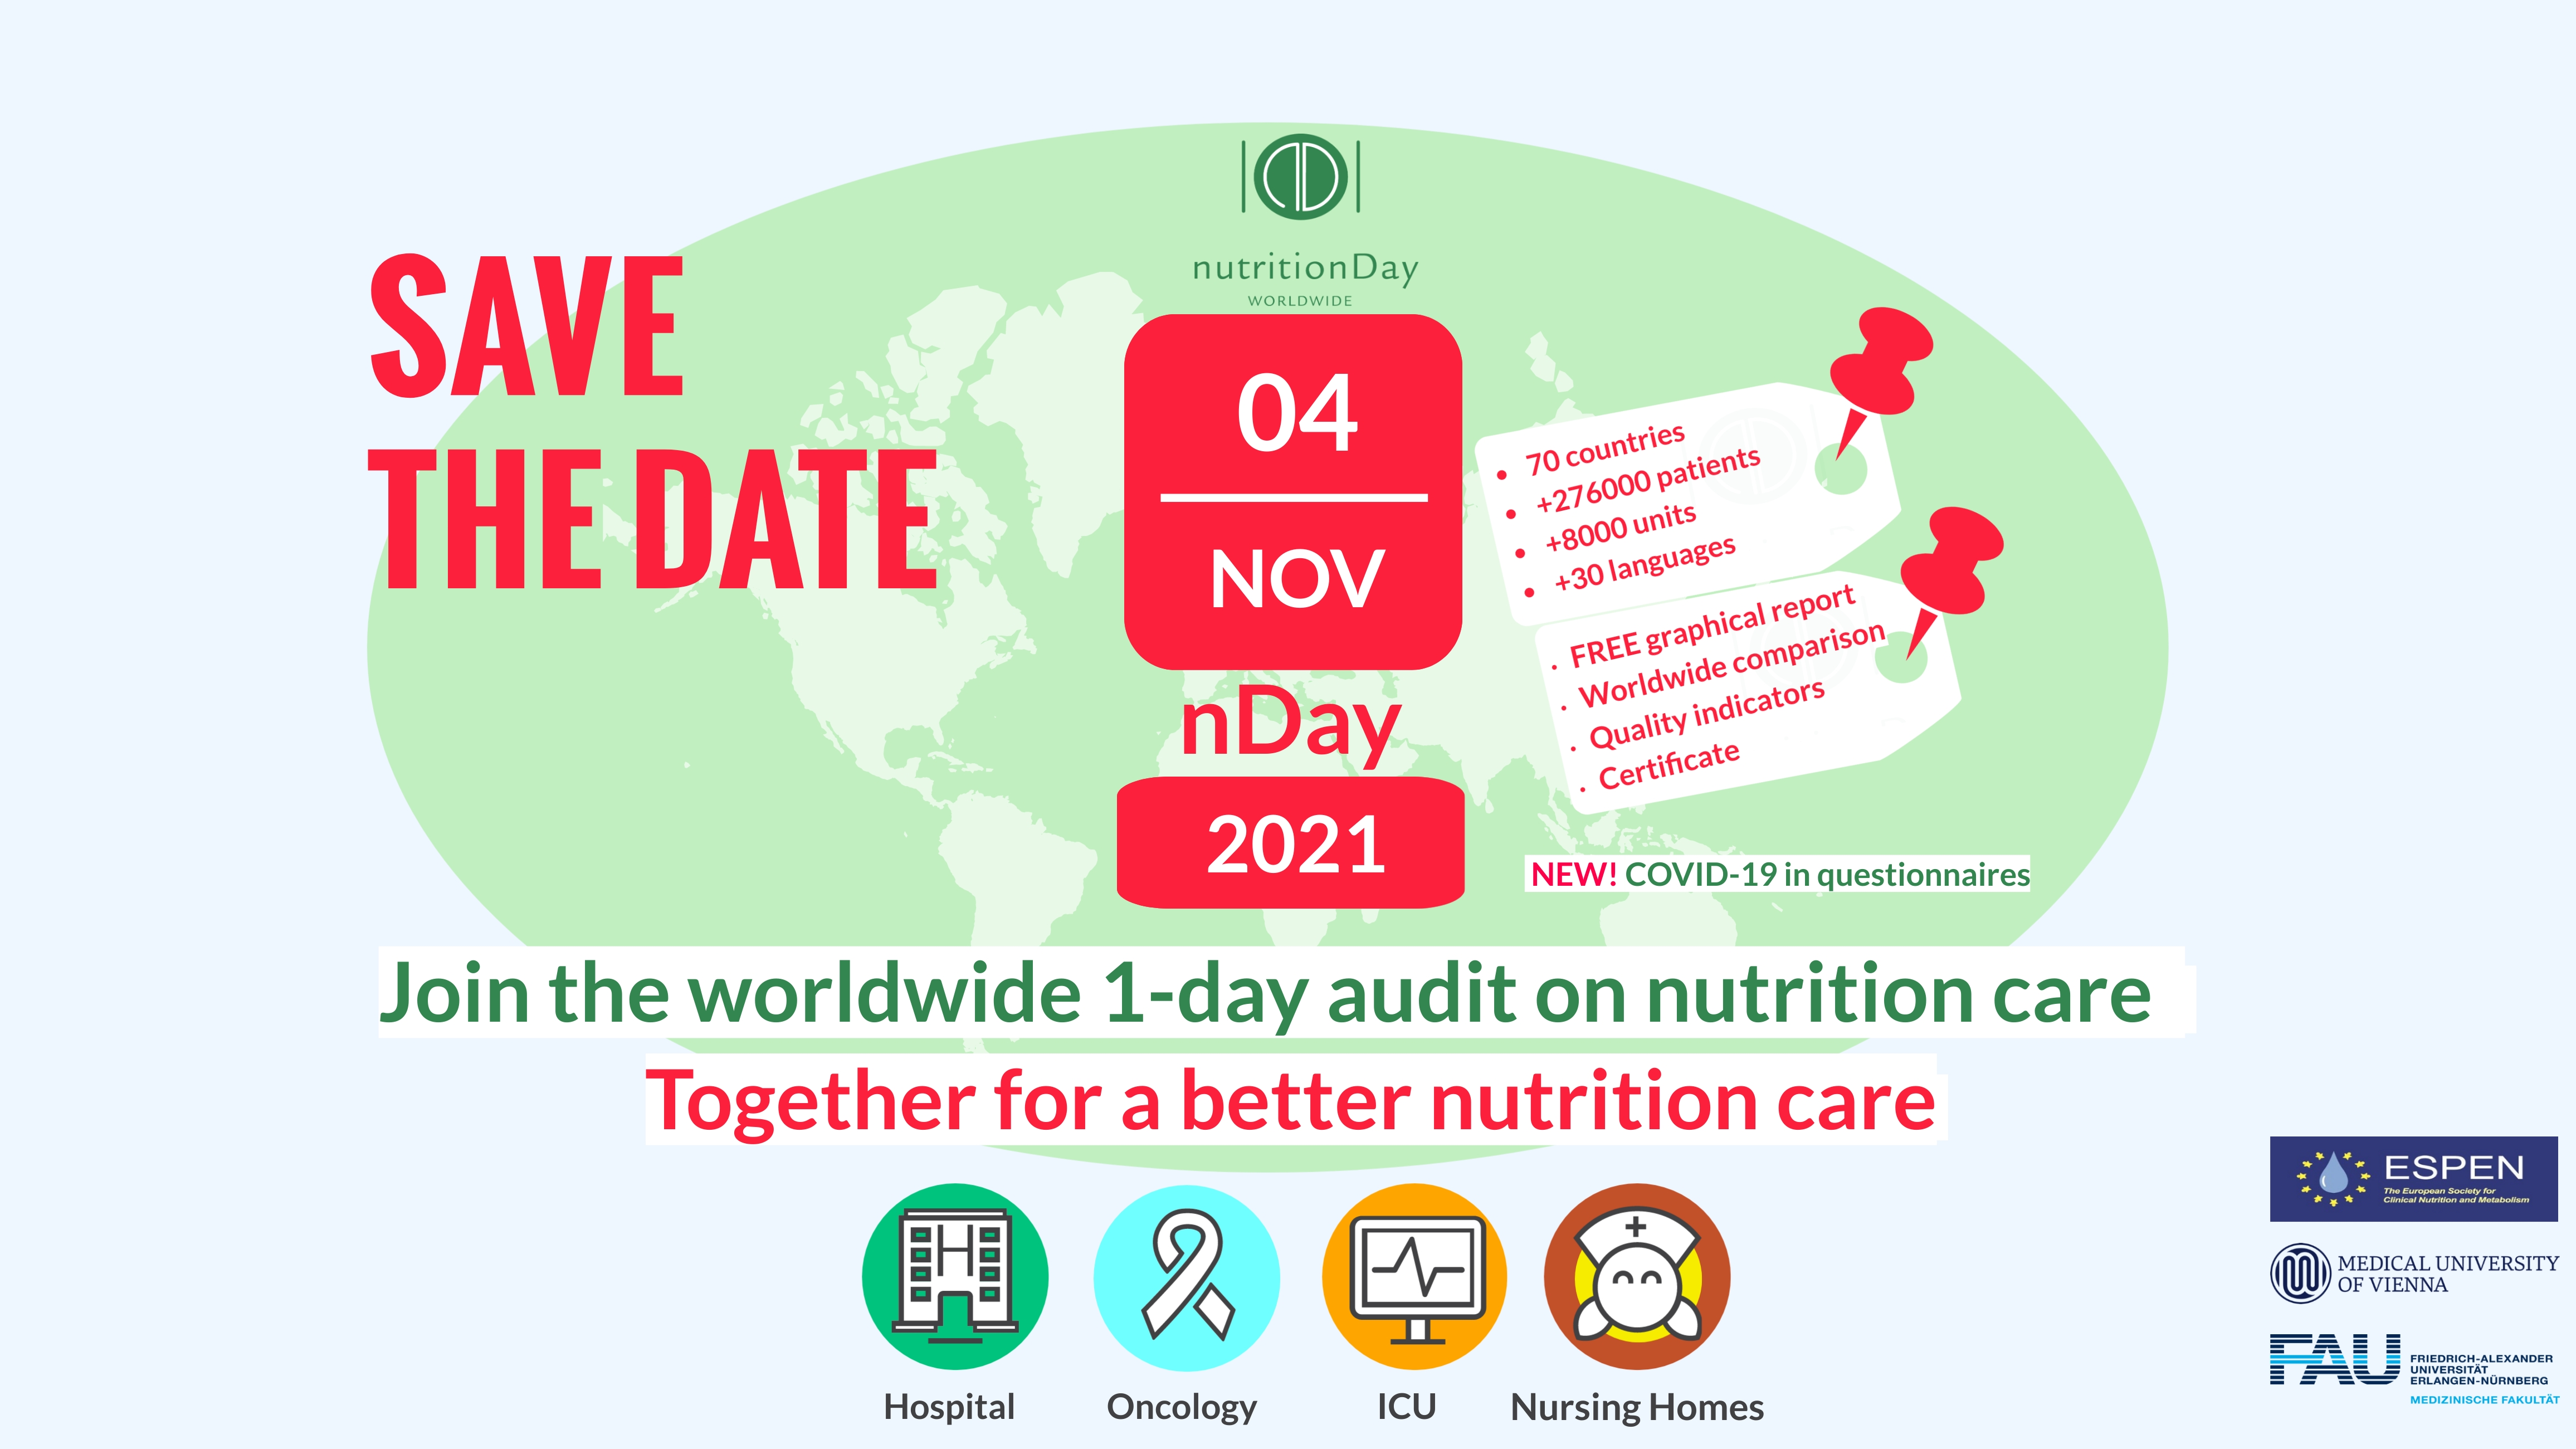 ltkarte mit Save the Date Ankündigung für den Nutrition Day am 04.11.2120